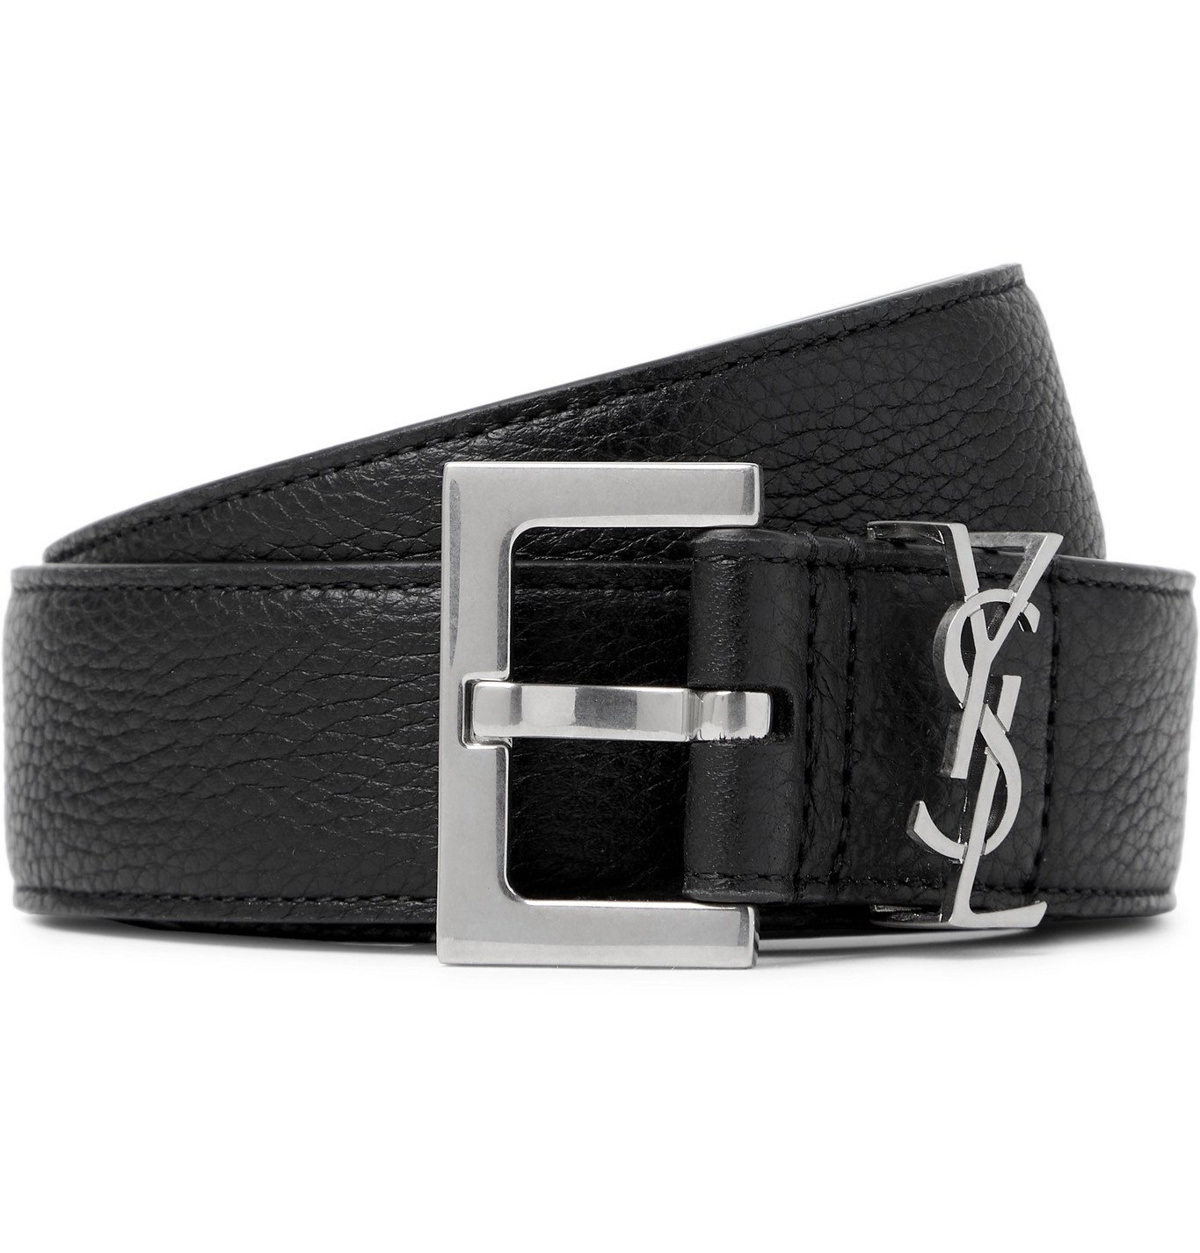 Black Full Grain Leather Belt